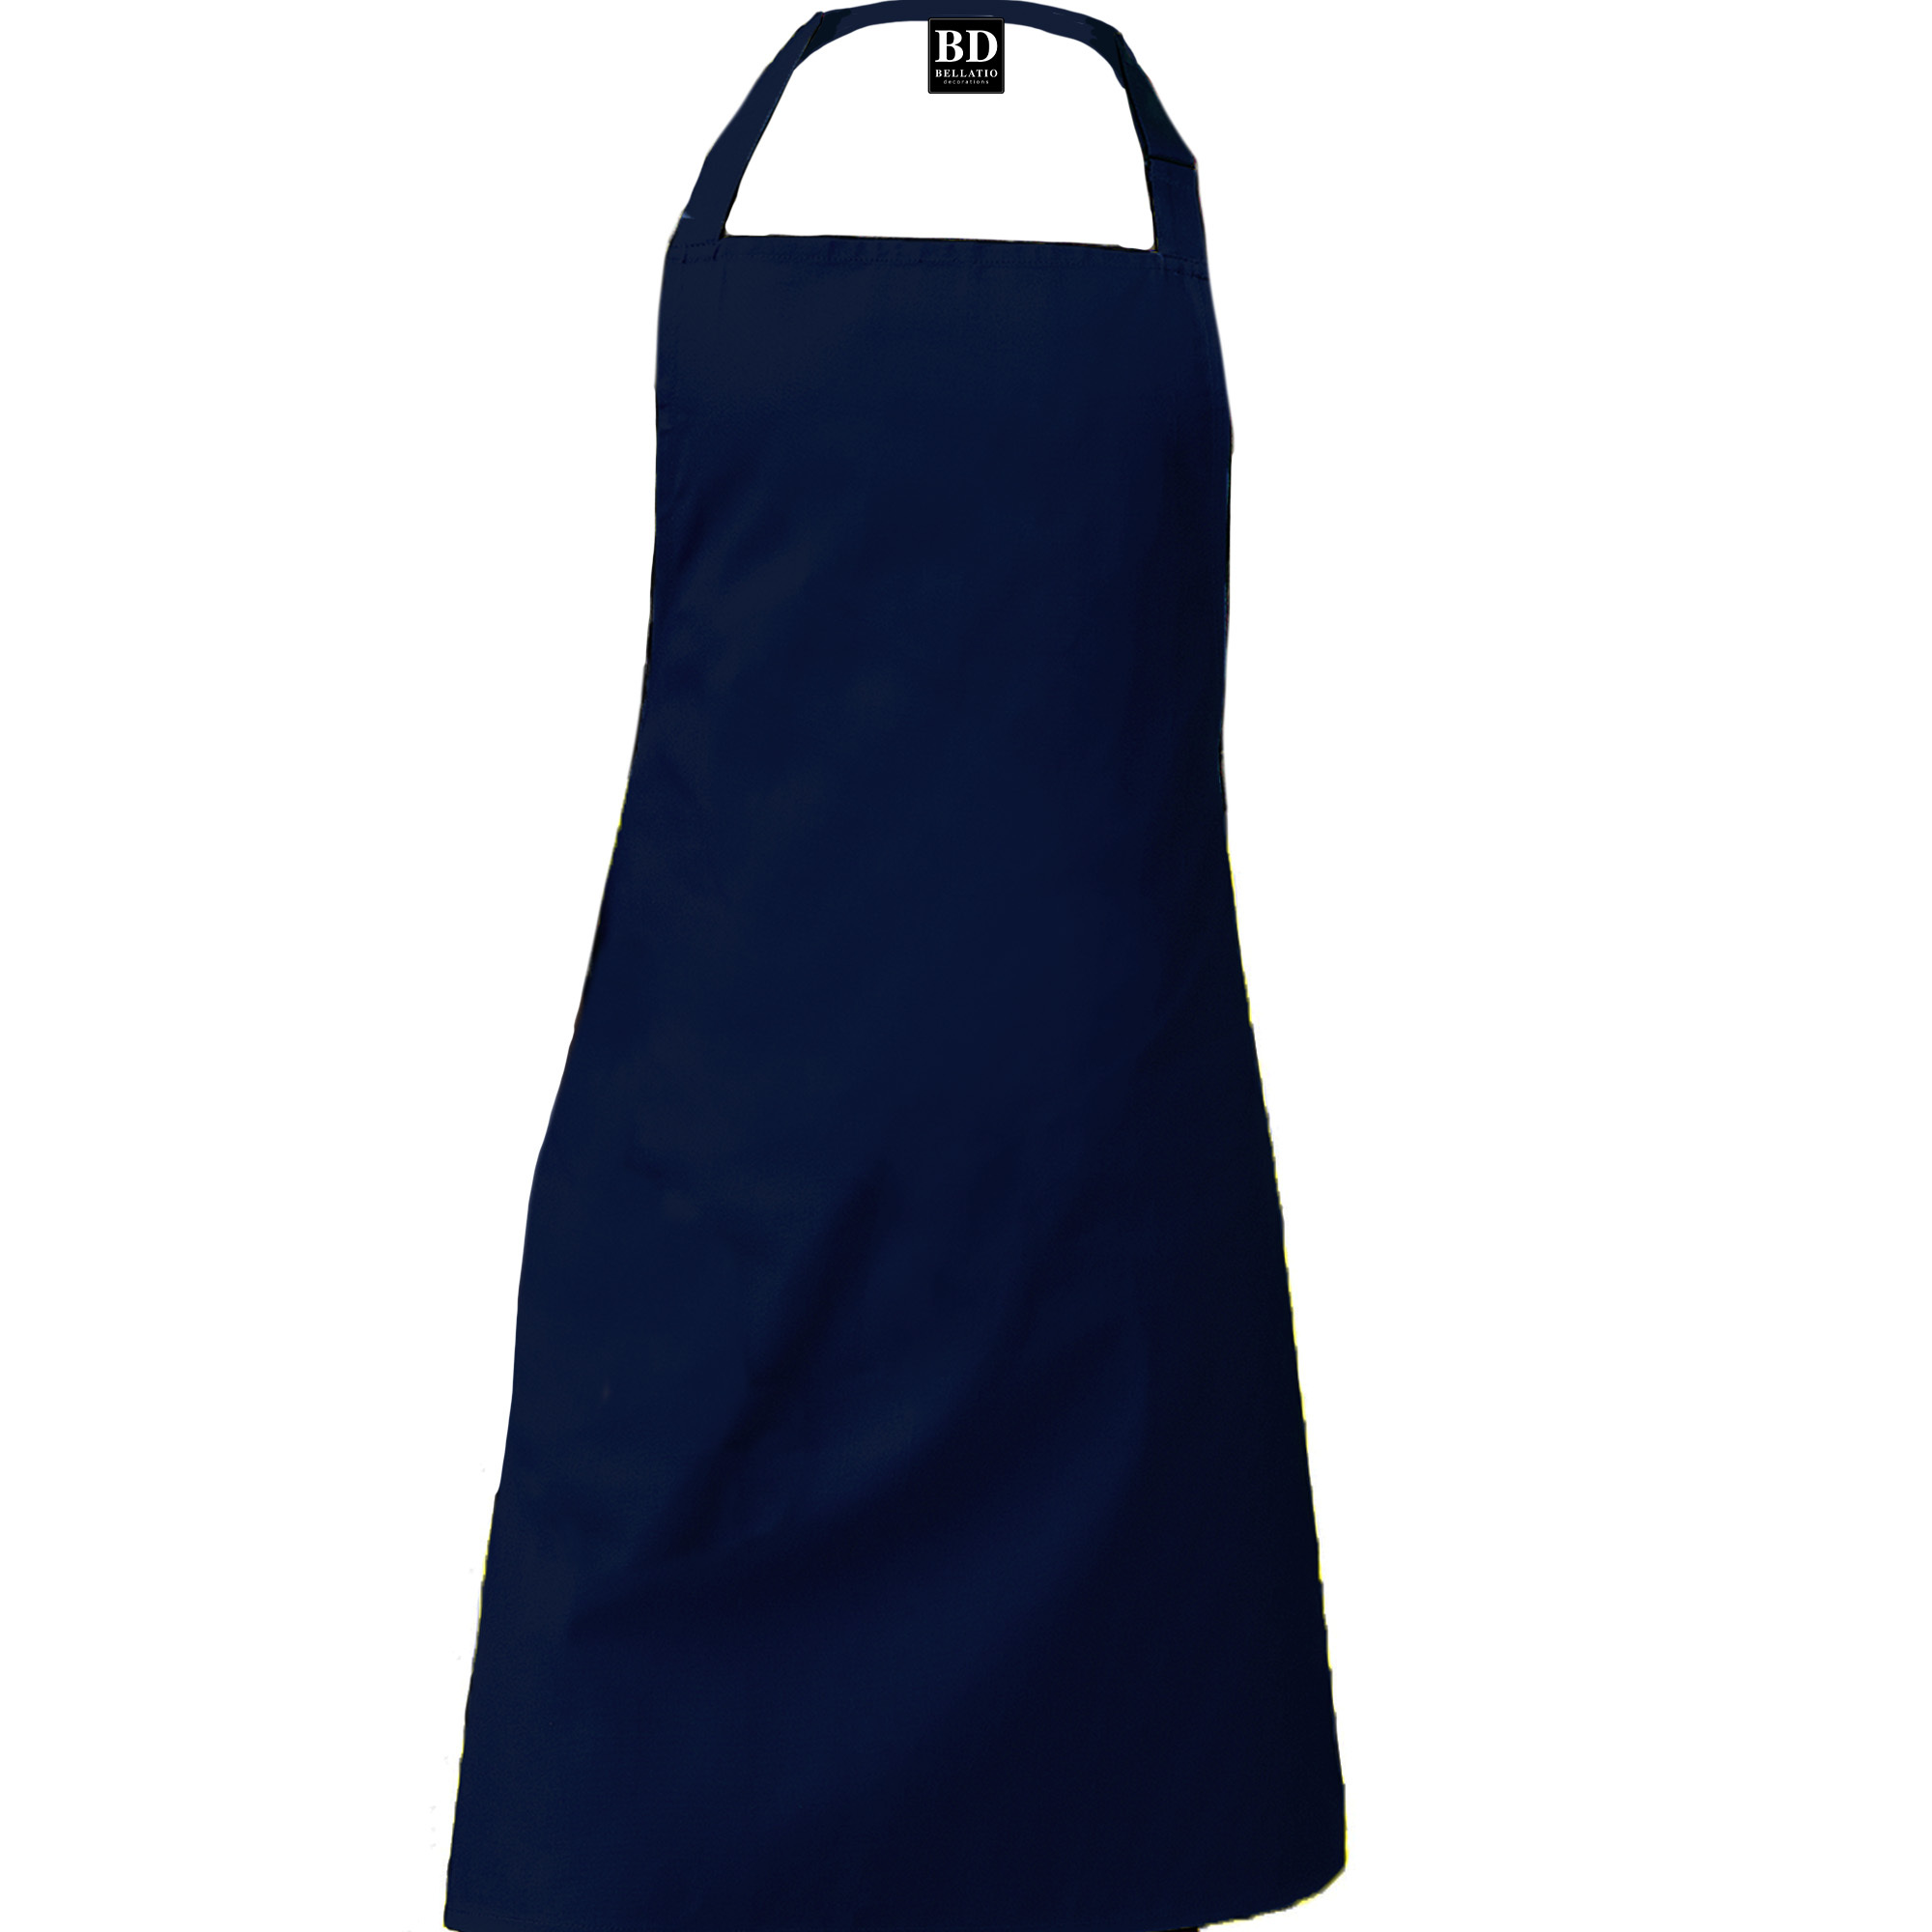 Master chef barbeque schort / keukenschort kobalt blauw heren